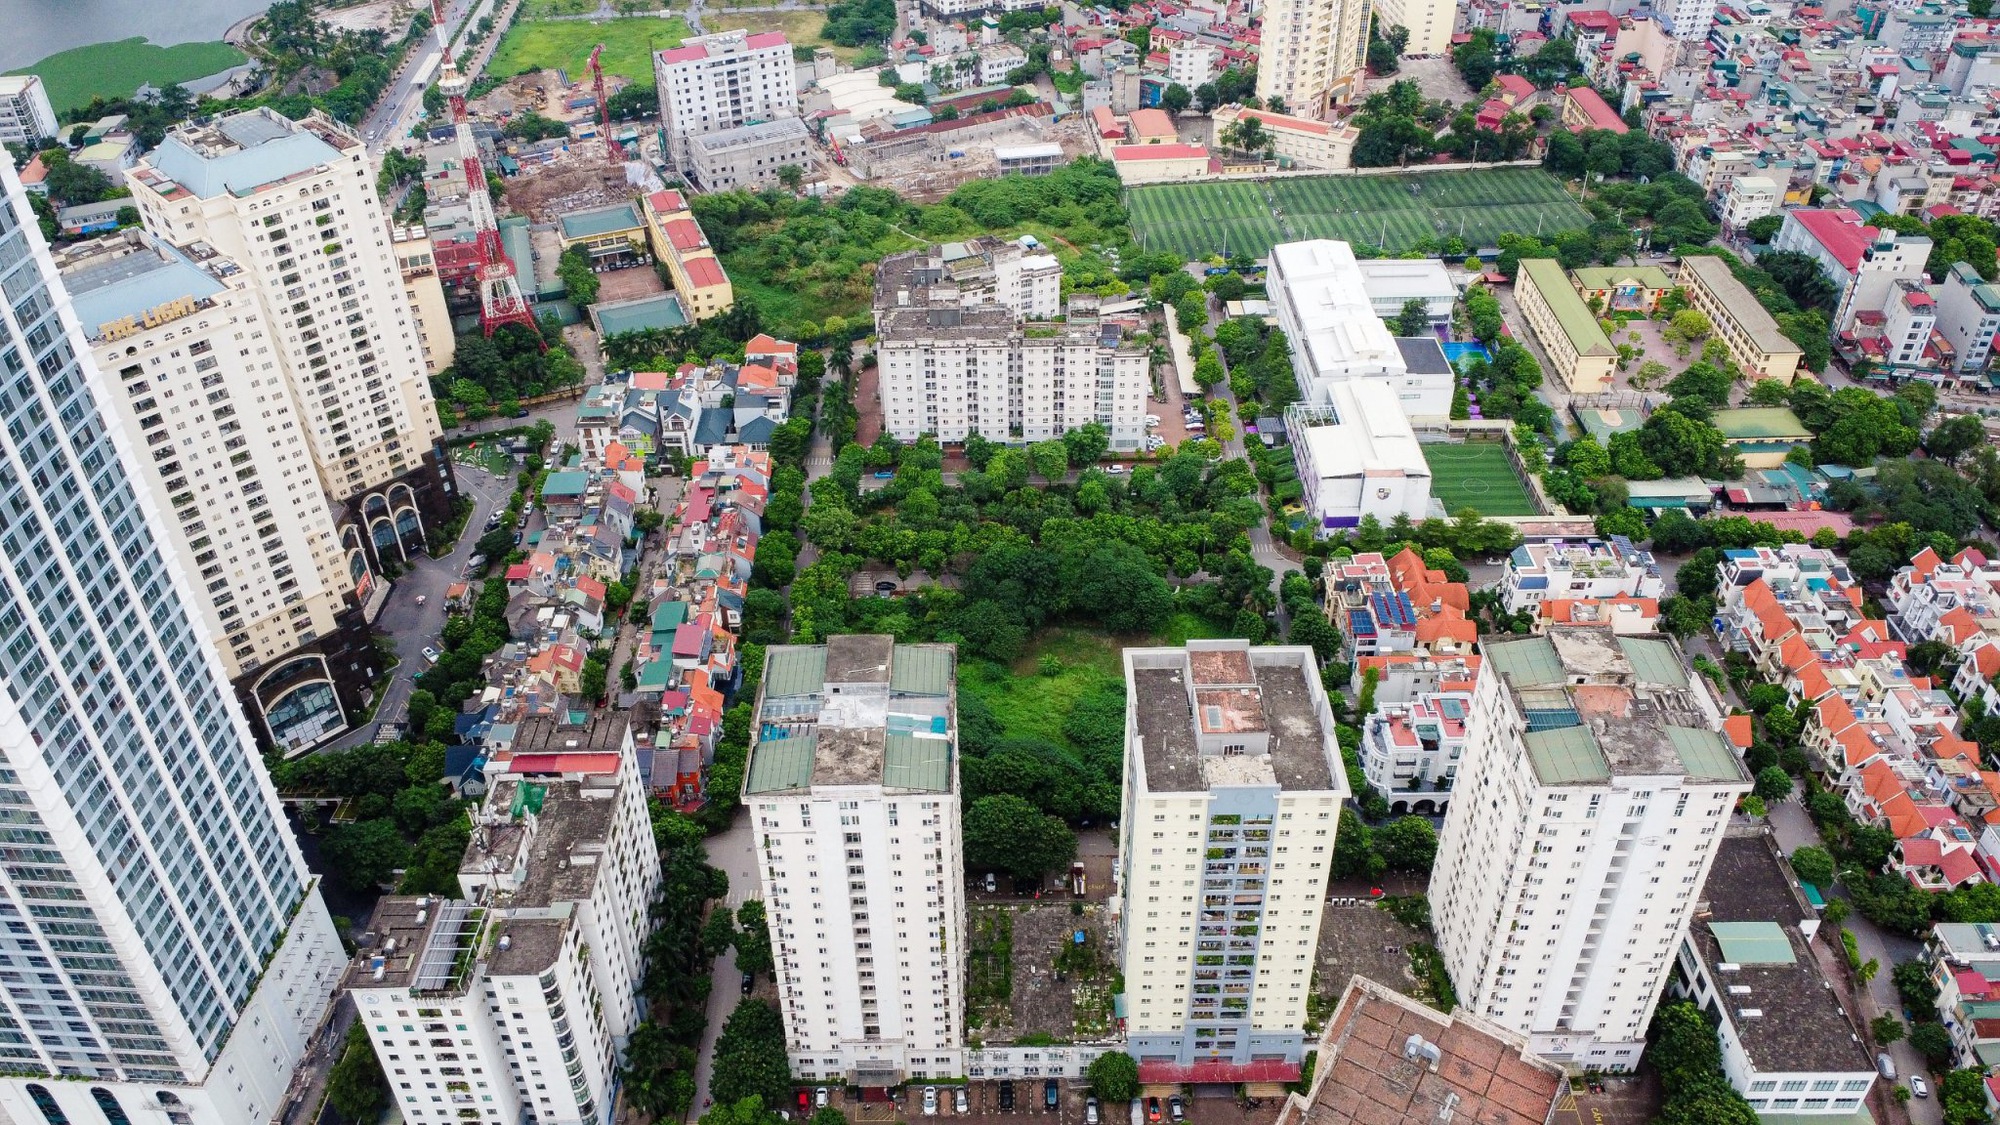 “Hô biến” quỹ đất 20% thành biệt thự triệu đô, cao ốc tại Khu đô thị mới Trung Văn - Ảnh 10.